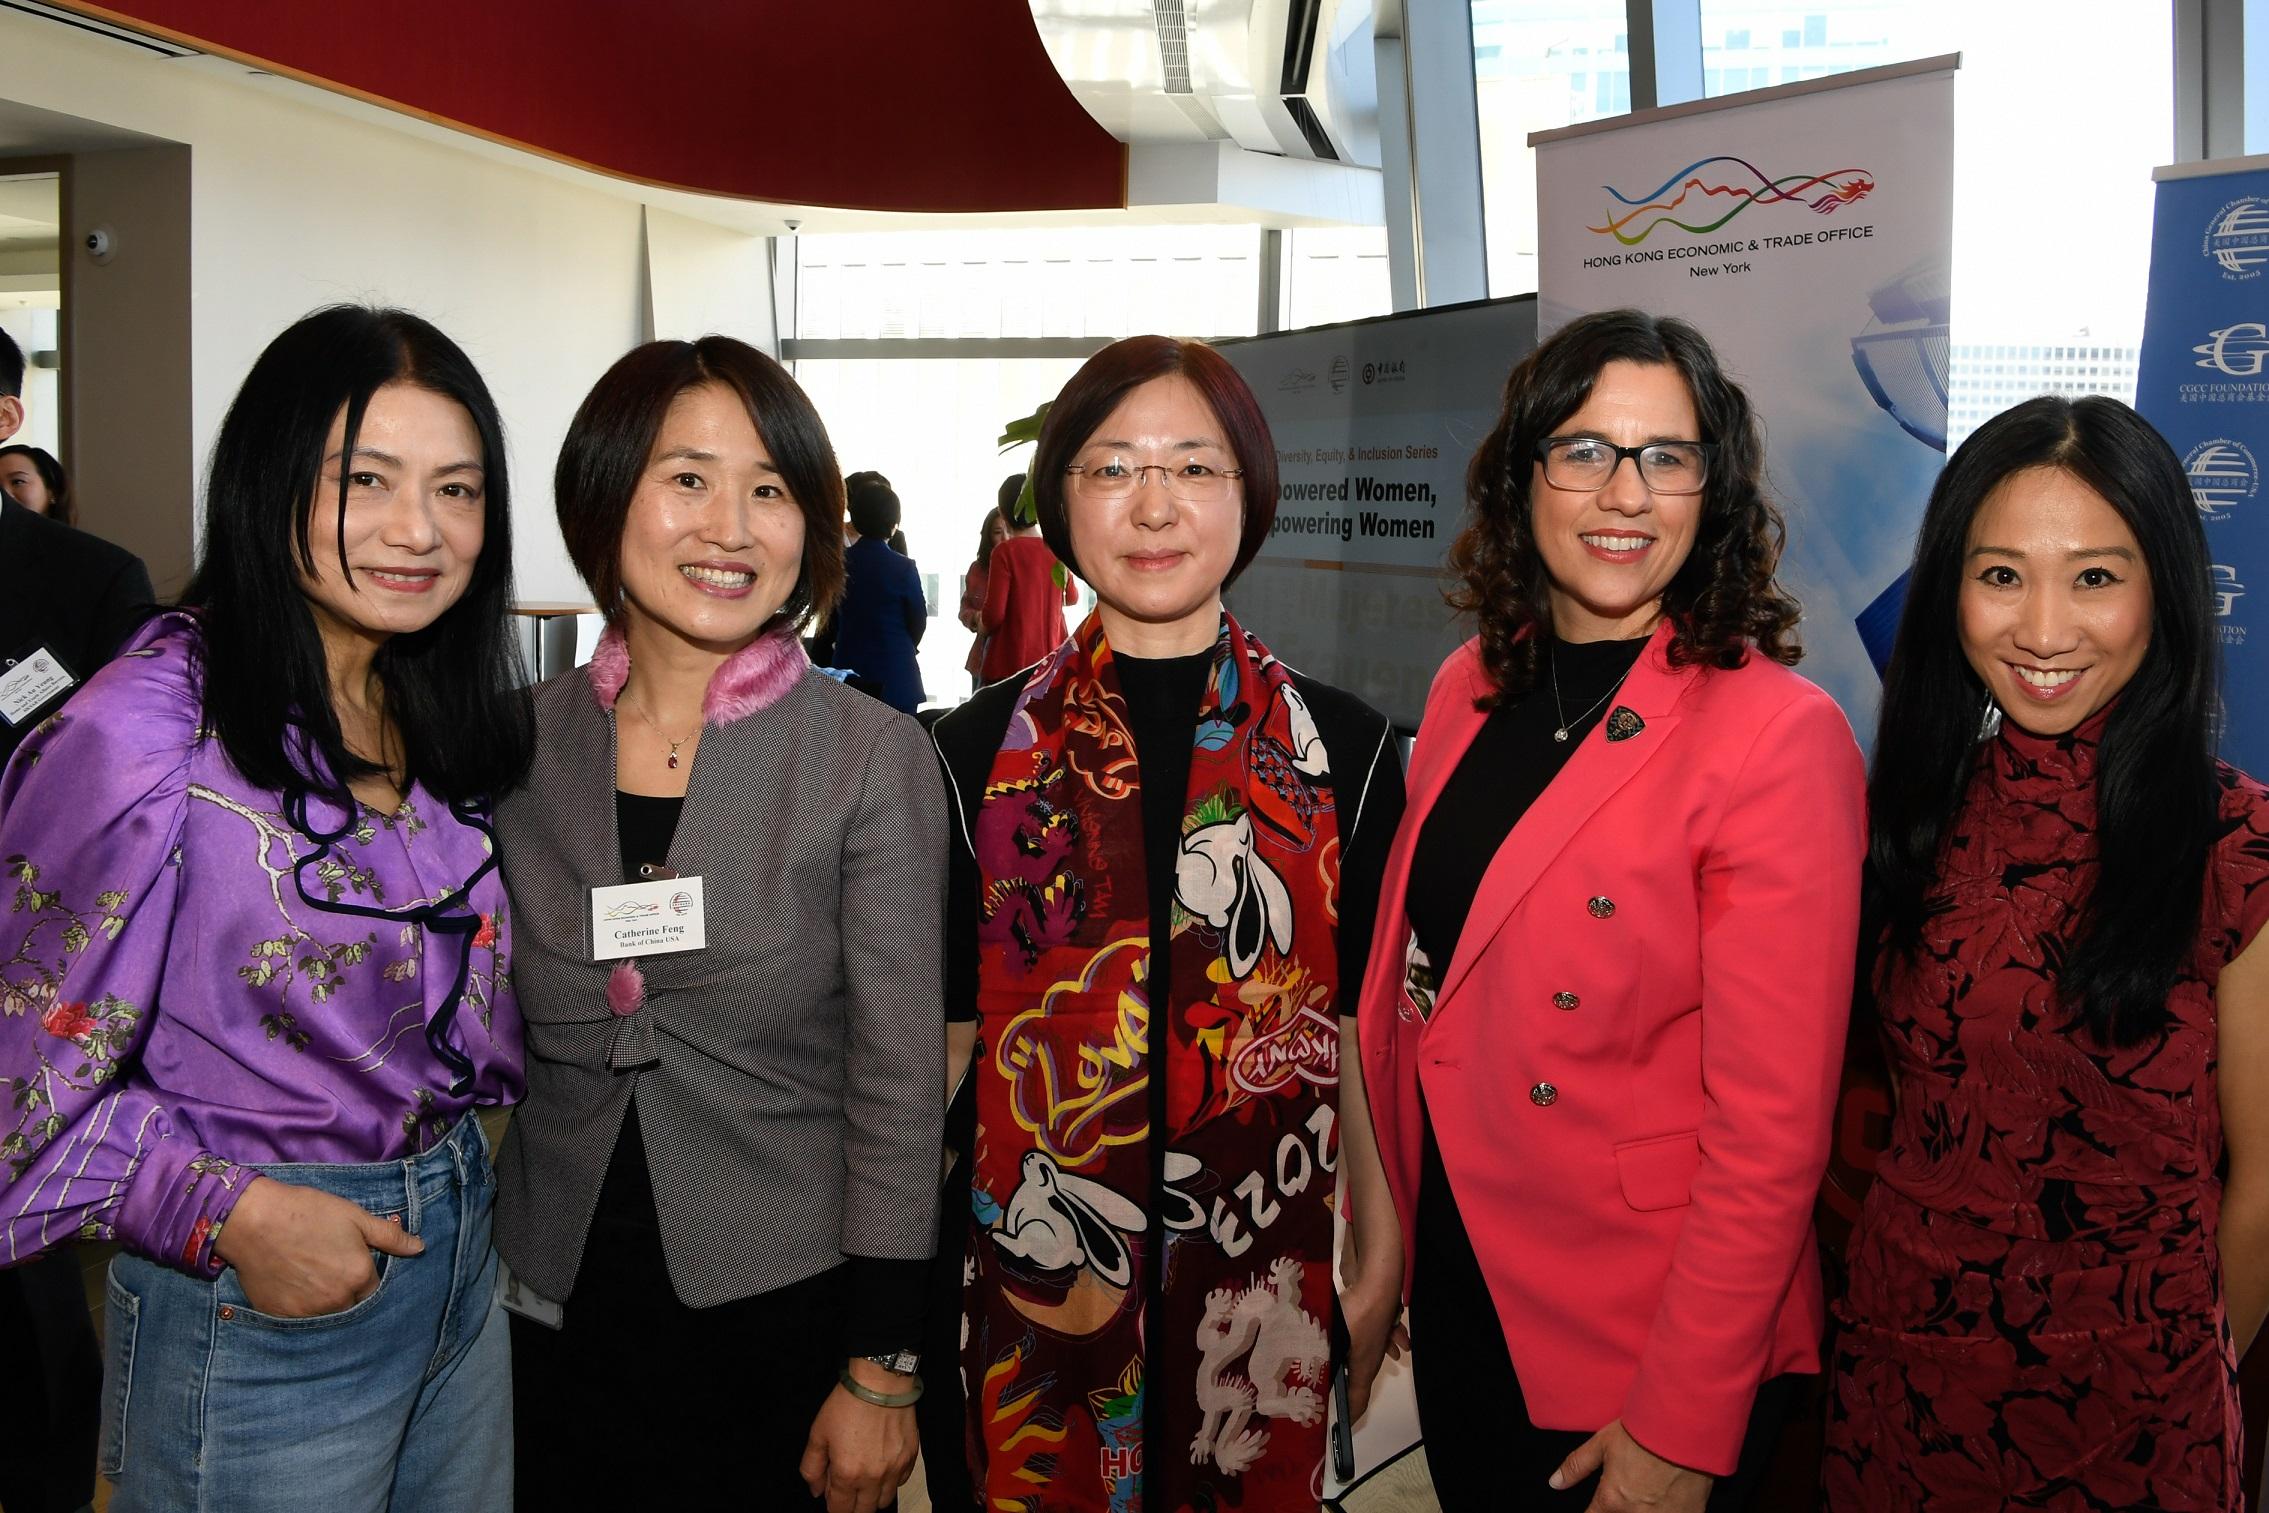 為慶祝國際婦女節，香港駐紐約經濟貿易辦事處（香港駐紐約經貿辦）於三月八日（紐約時間）與美國中國總商會合辦以「婦女賦權．提升女性地位」為主題的午餐會，吸引超過40位來自紐約智庫、商界、創意產業和體育界的女性領袖參加。（由左至右）著名時裝設計師Vivienne Tam、中國銀行高級副總裁馮玉慧、美國中國總商會副主席兼中國工商銀行美國區域管理委員會主席張劍宇、NBA布魯克林籃網隊全球合作夥伴關係執行副總裁Catherine Carlson和香港駐紐約經貿辦處長聶繼恩都有在會上發言。